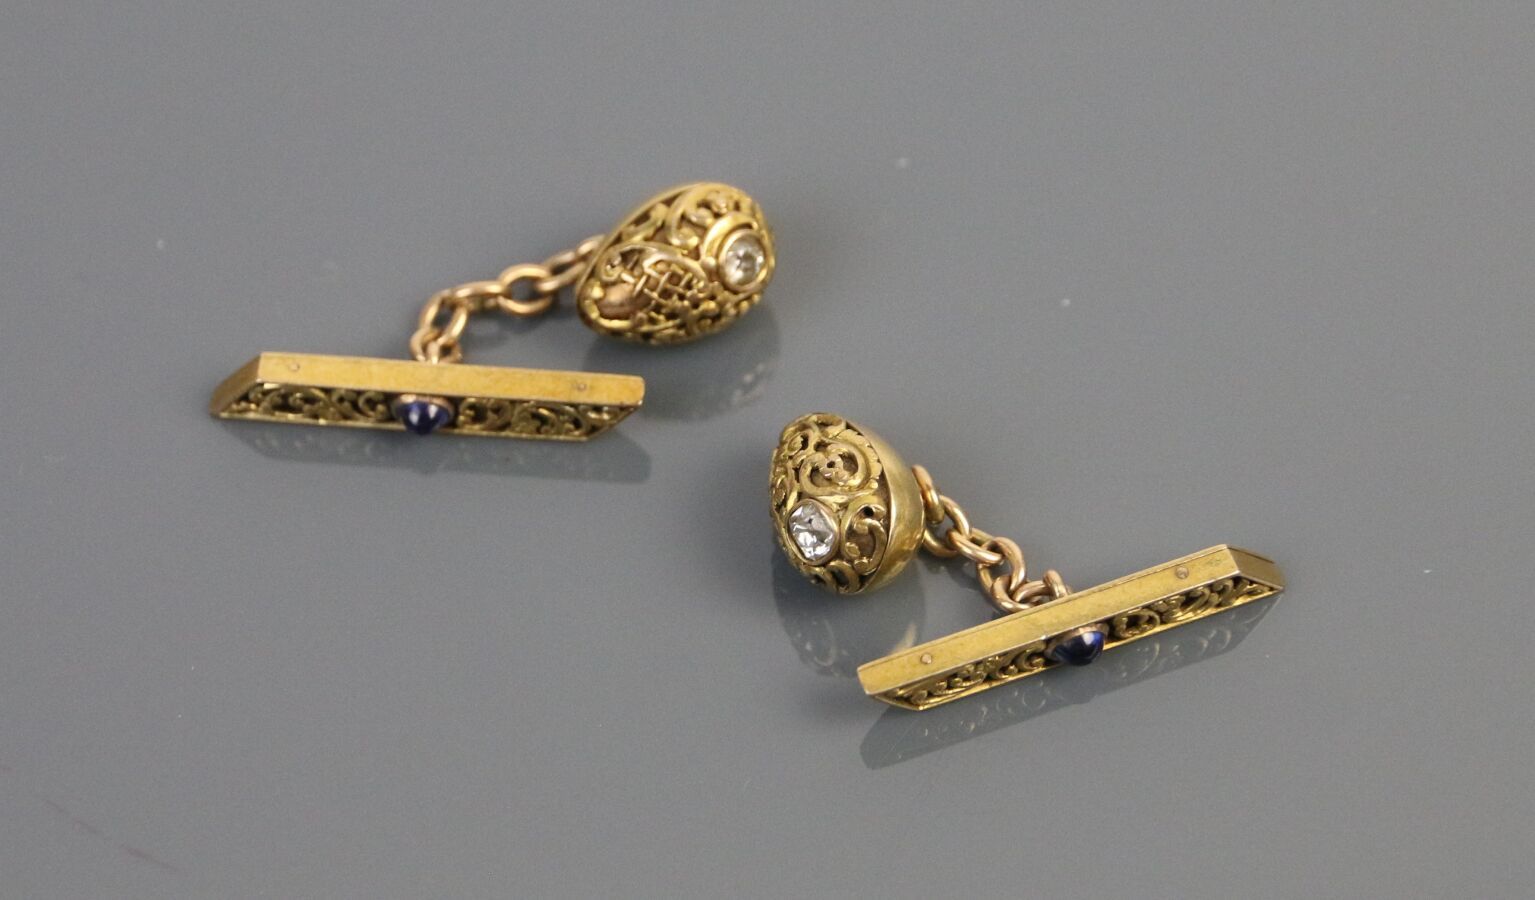 Null 一对585°/°黄金袖扣，有凹凸不平的装饰，每个袖扣都镶嵌有凸圆形蓝宝石和一朵钻石玫瑰。

毛重：8.7克